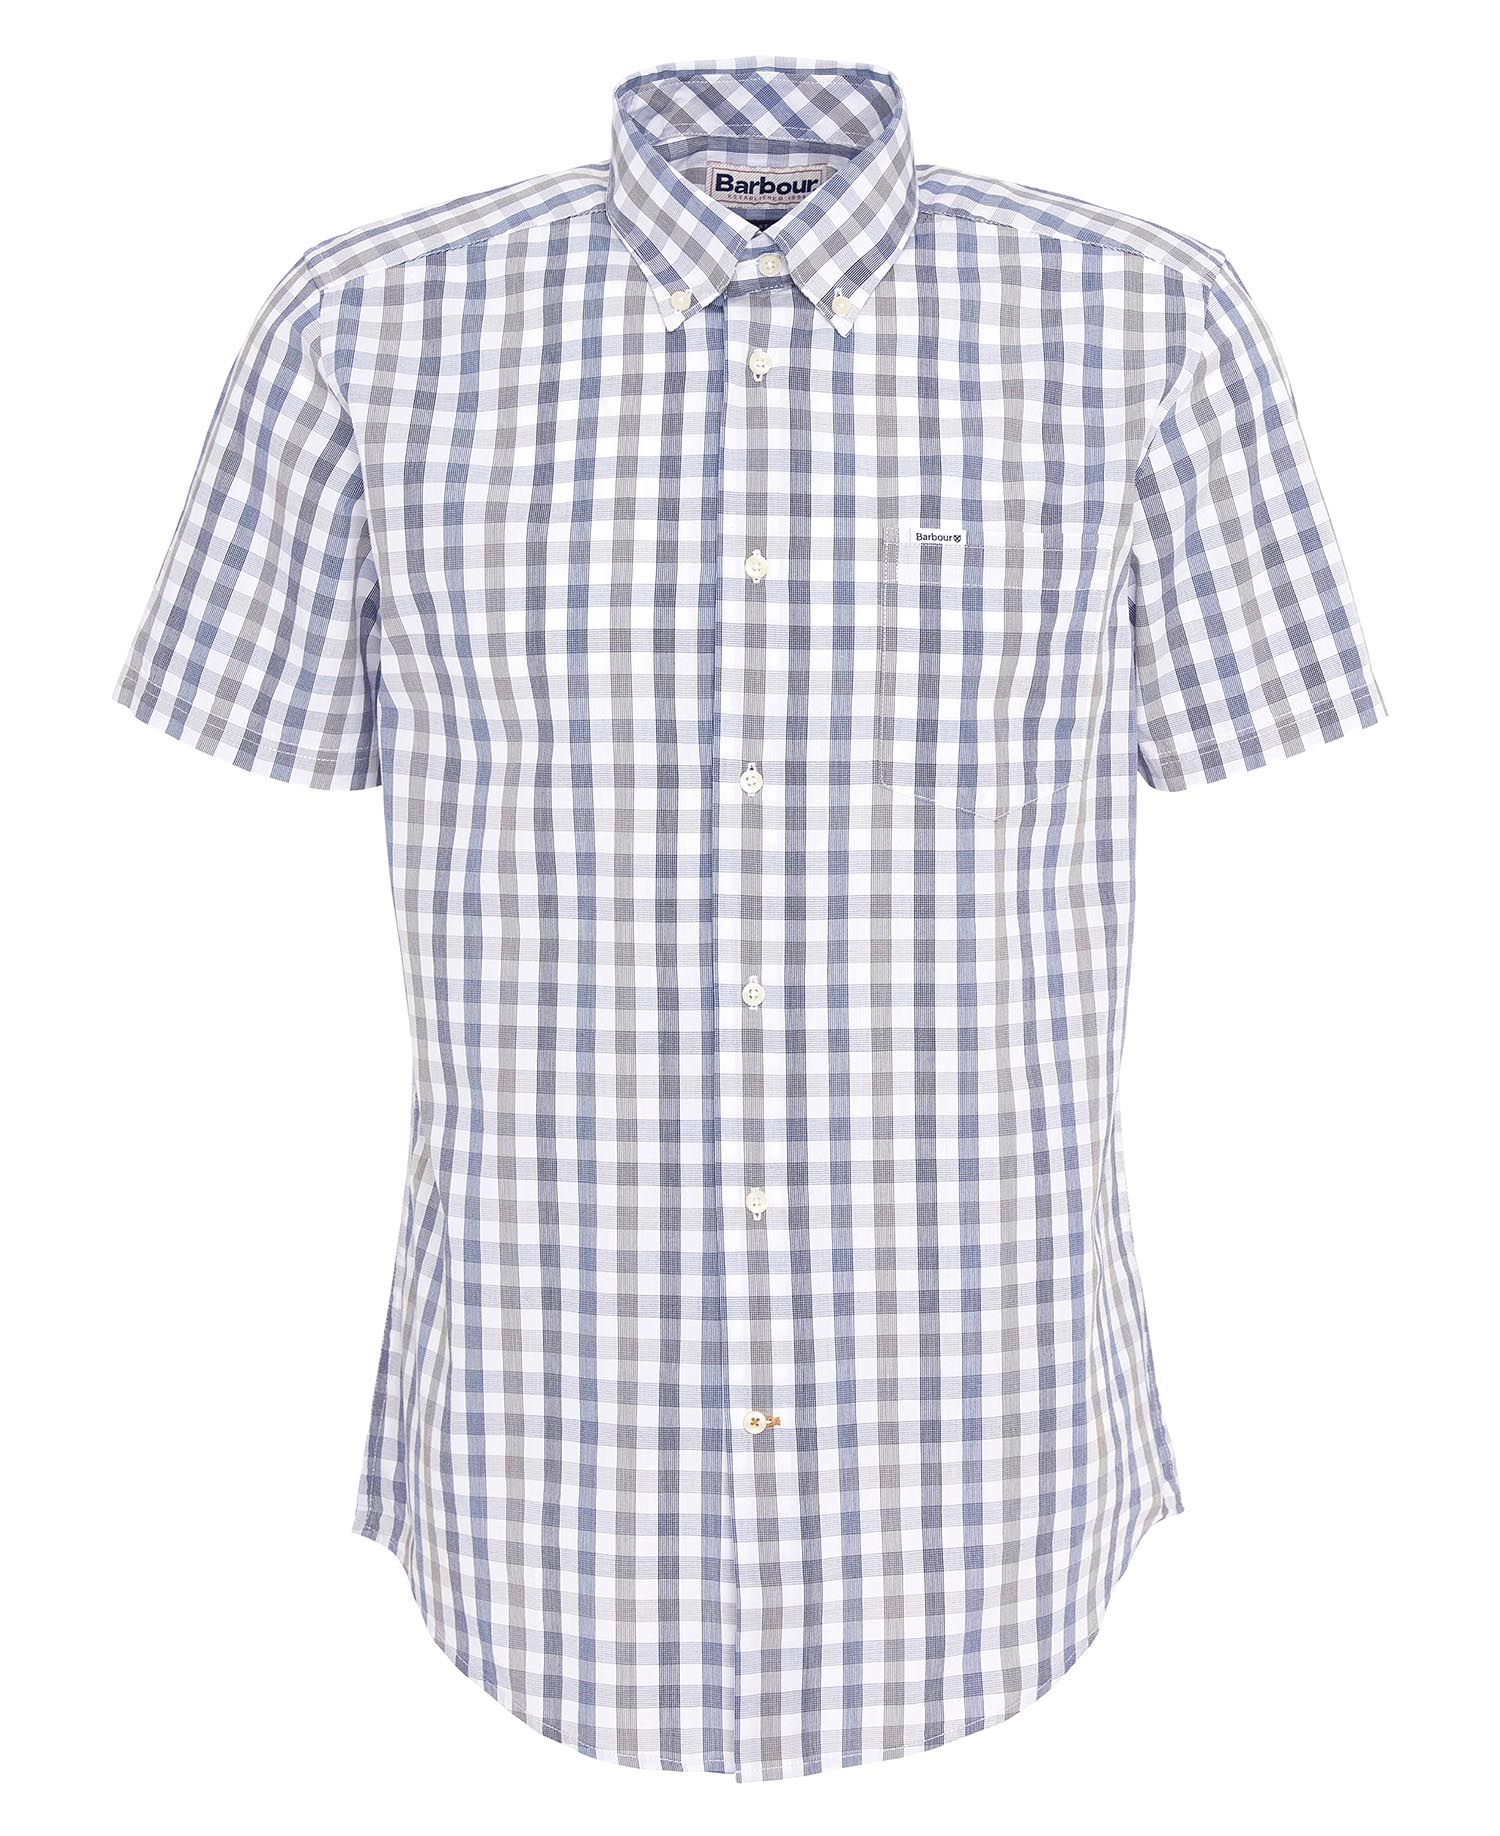 Longstone Tailored Short-Sleeved Shirt